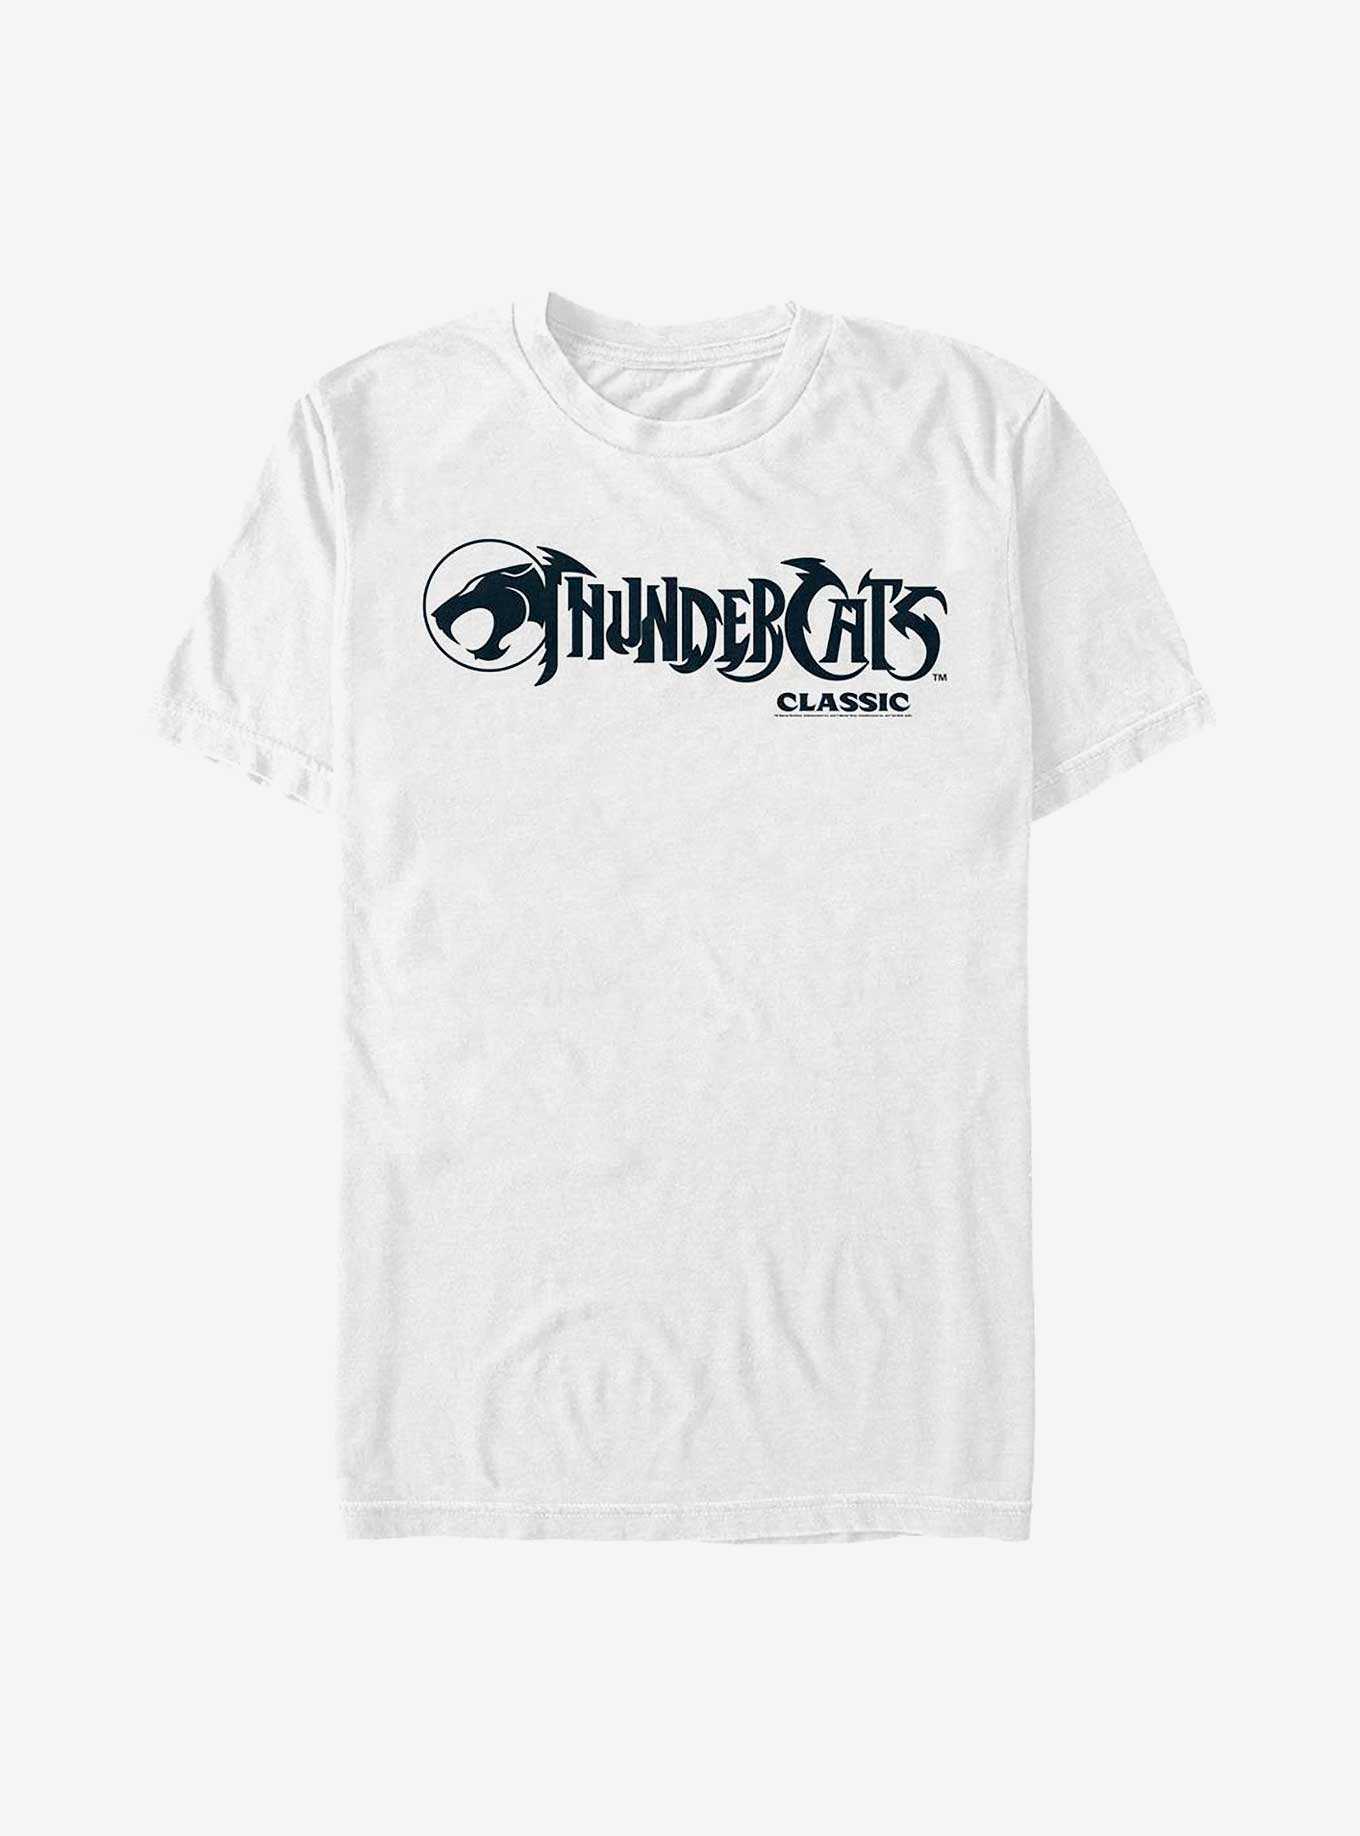 Thundercats Logo Black And White T-Shirt, , hi-res